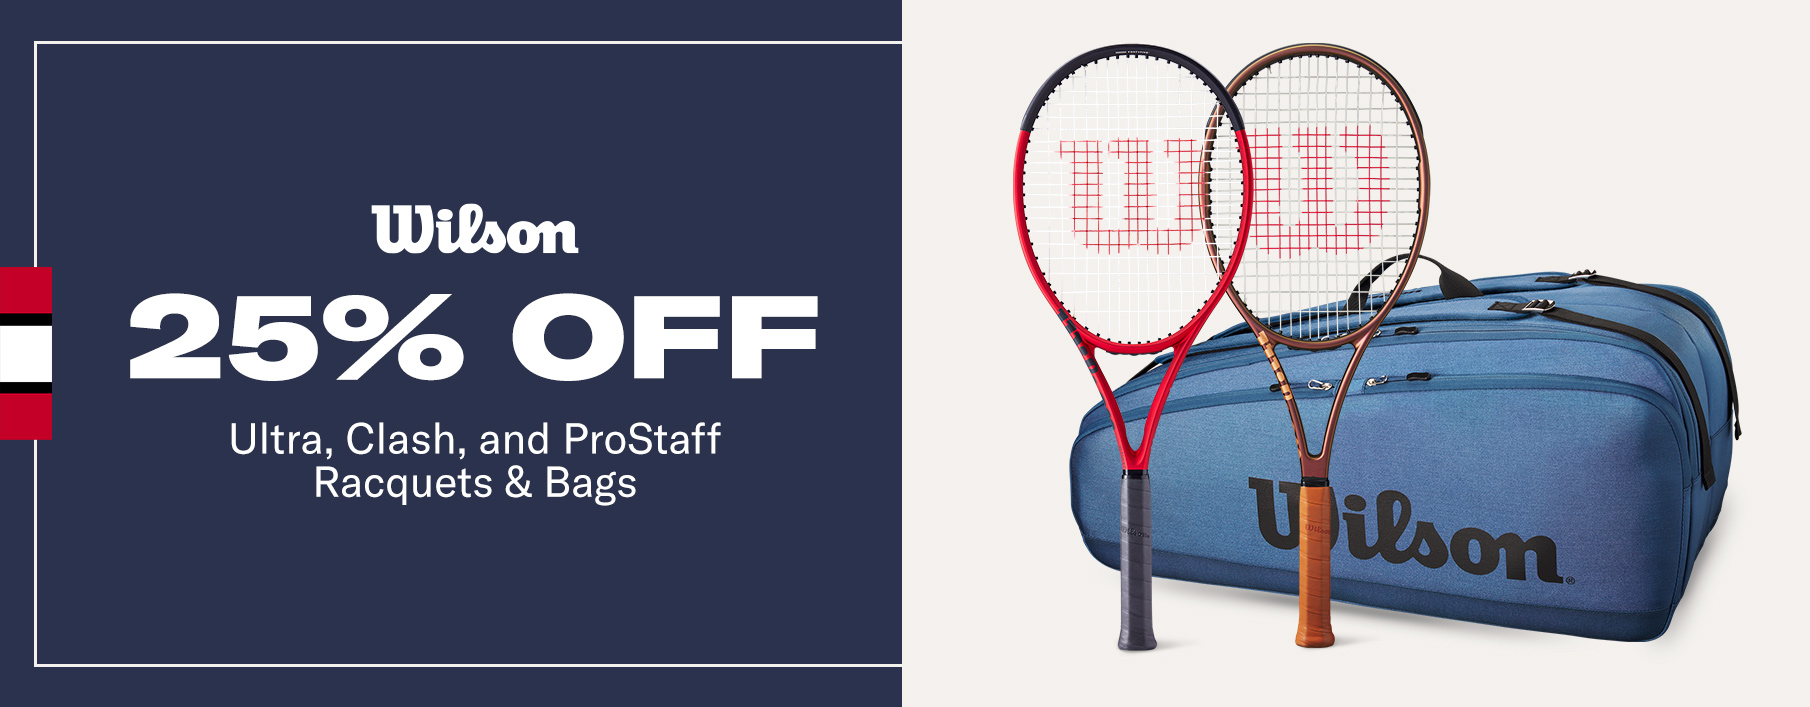 wilson blade ultra pro staff racquet racket racquets rackets bag bags promo deal